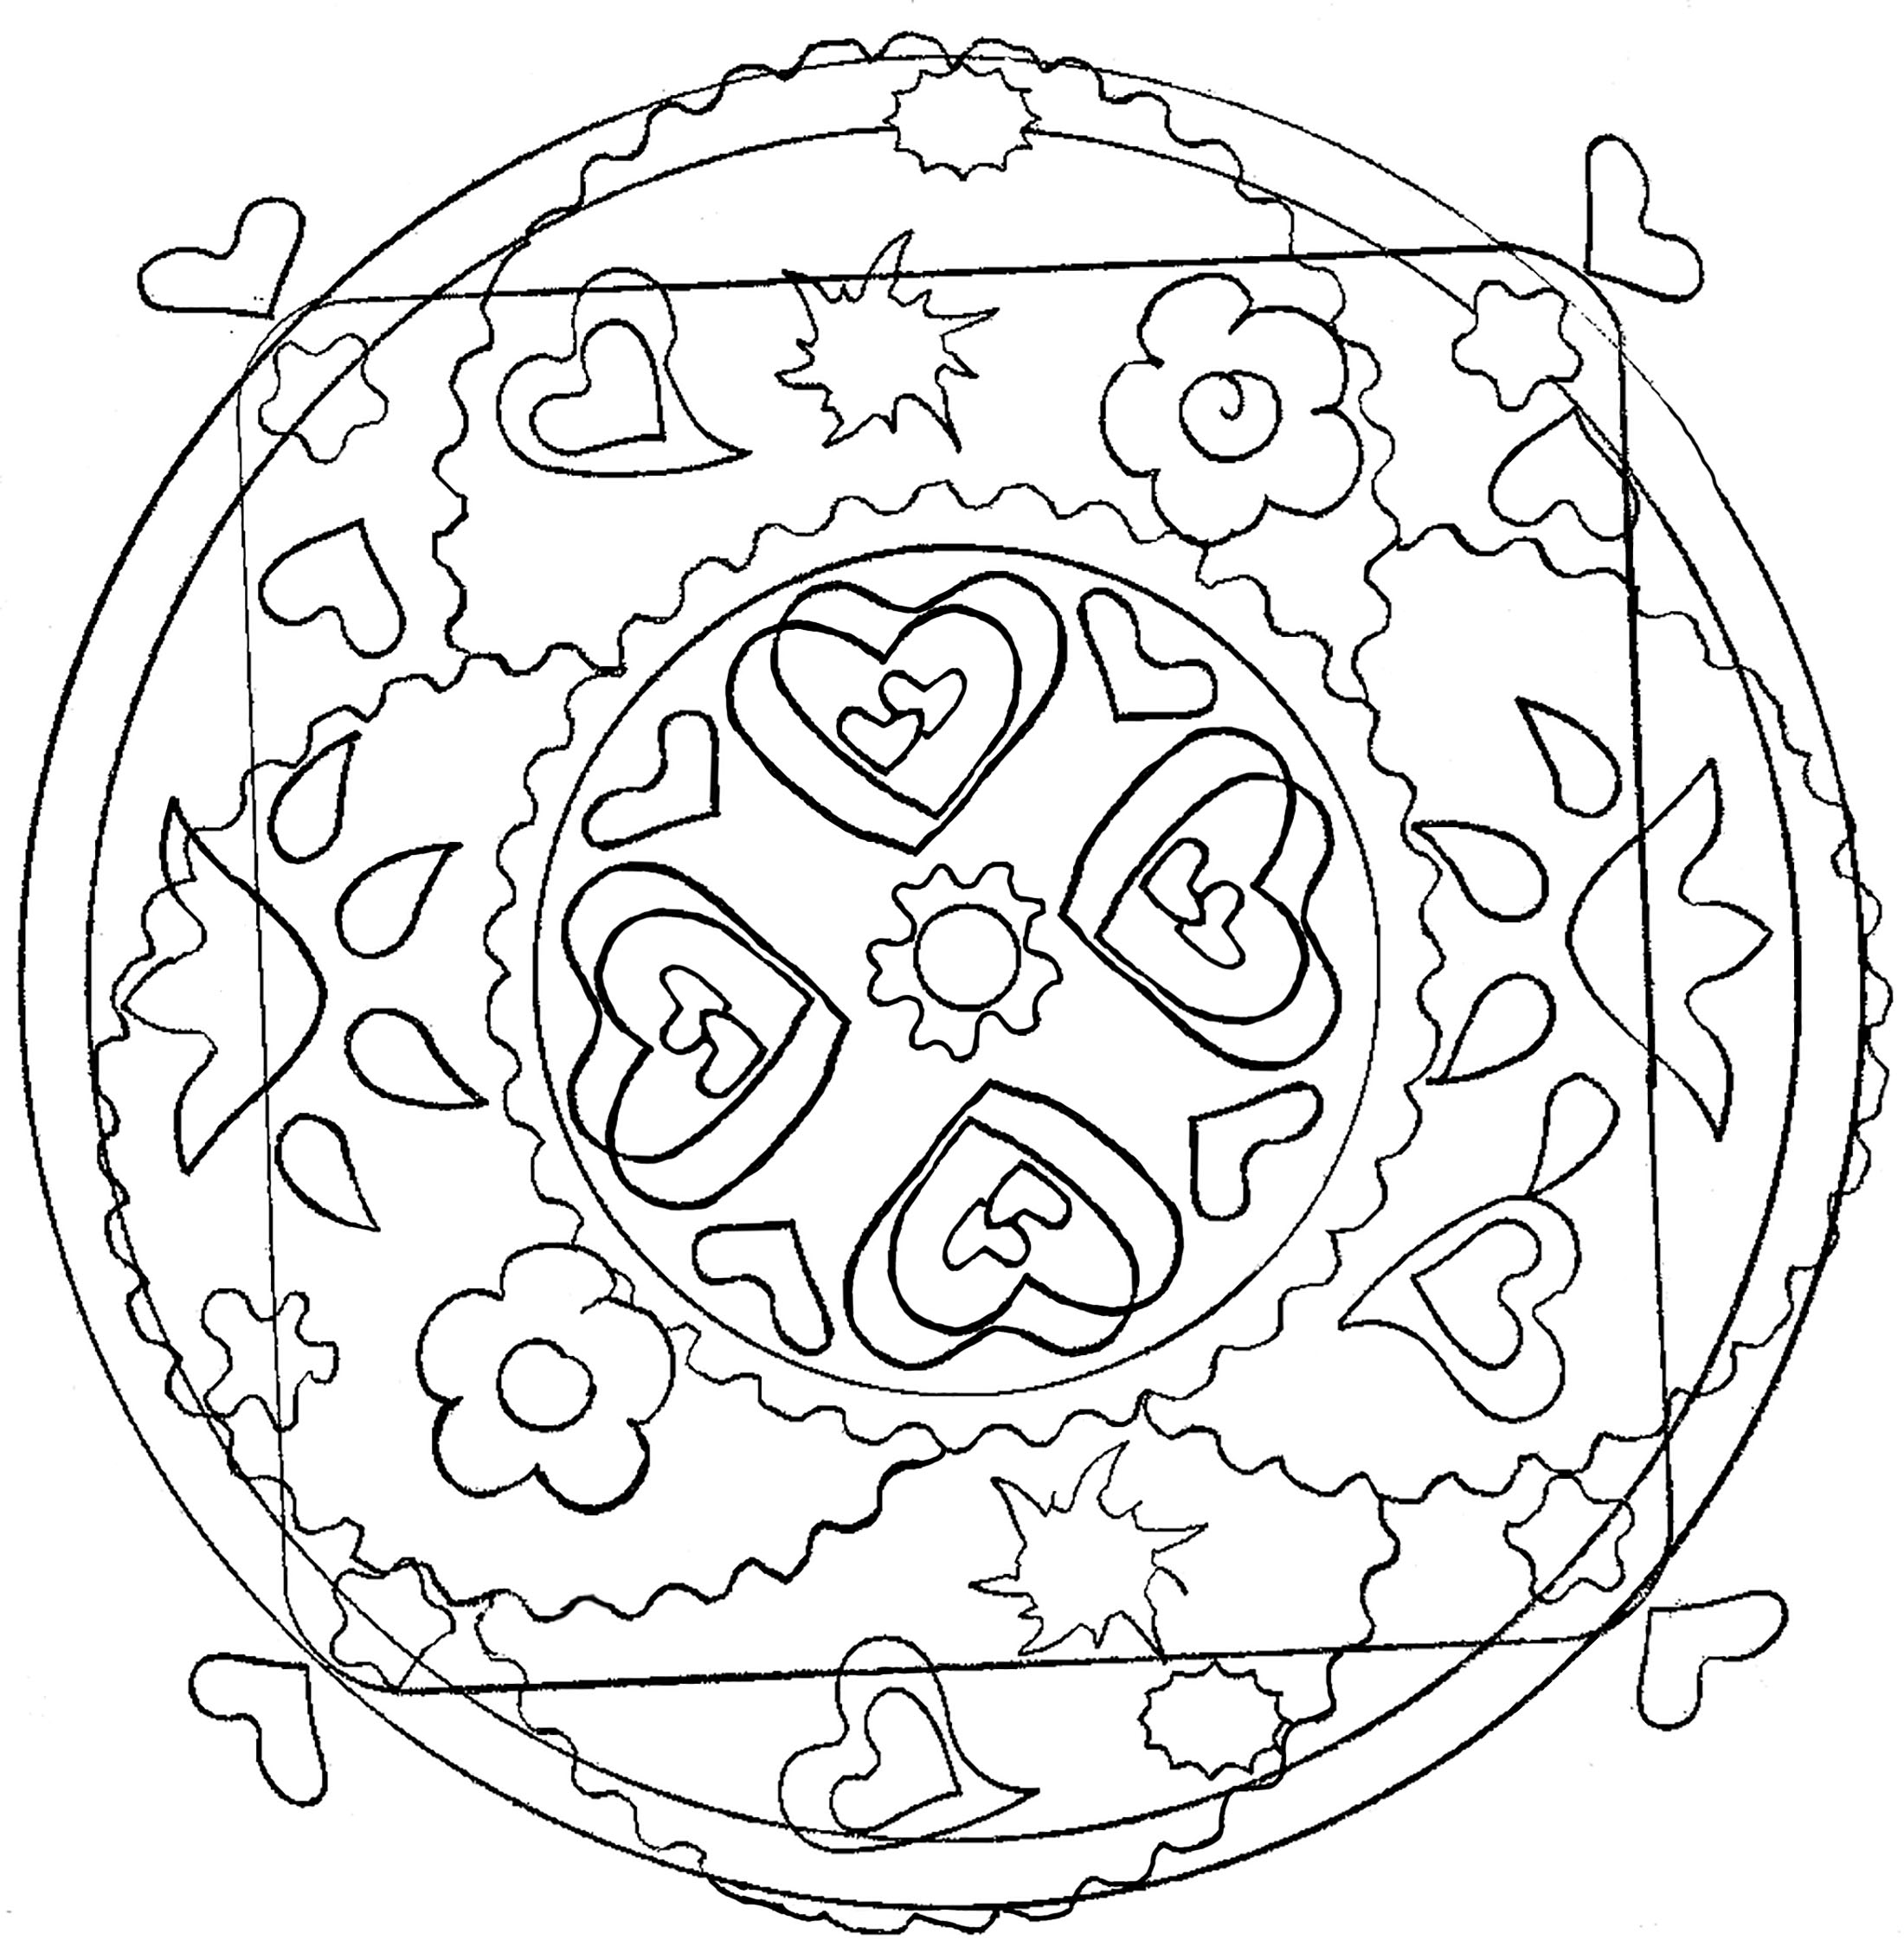 Mandala avec des coeurs et autres formes